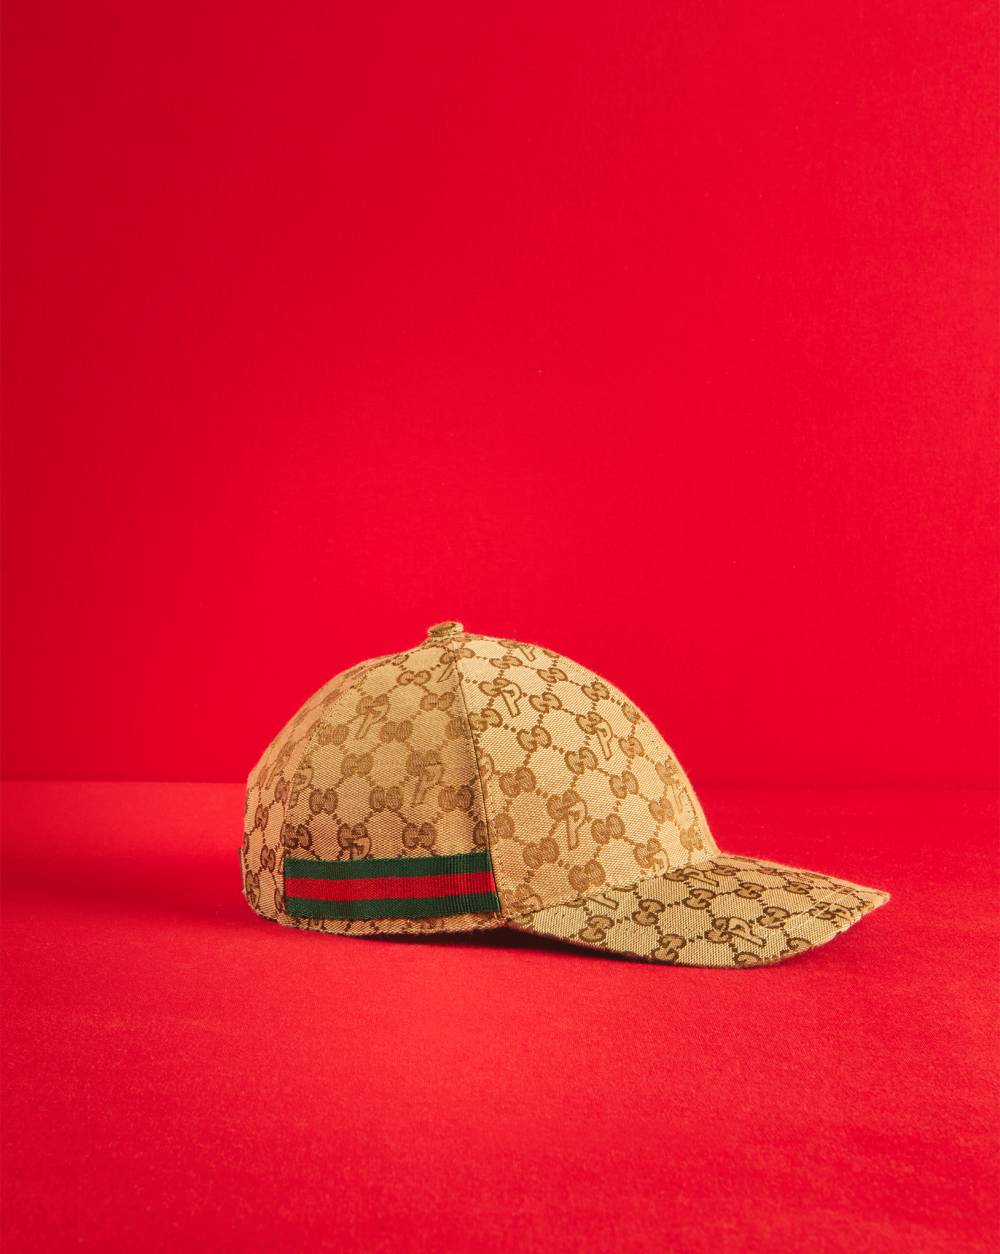 GG-P canvas baseball hat by Palace Gucci